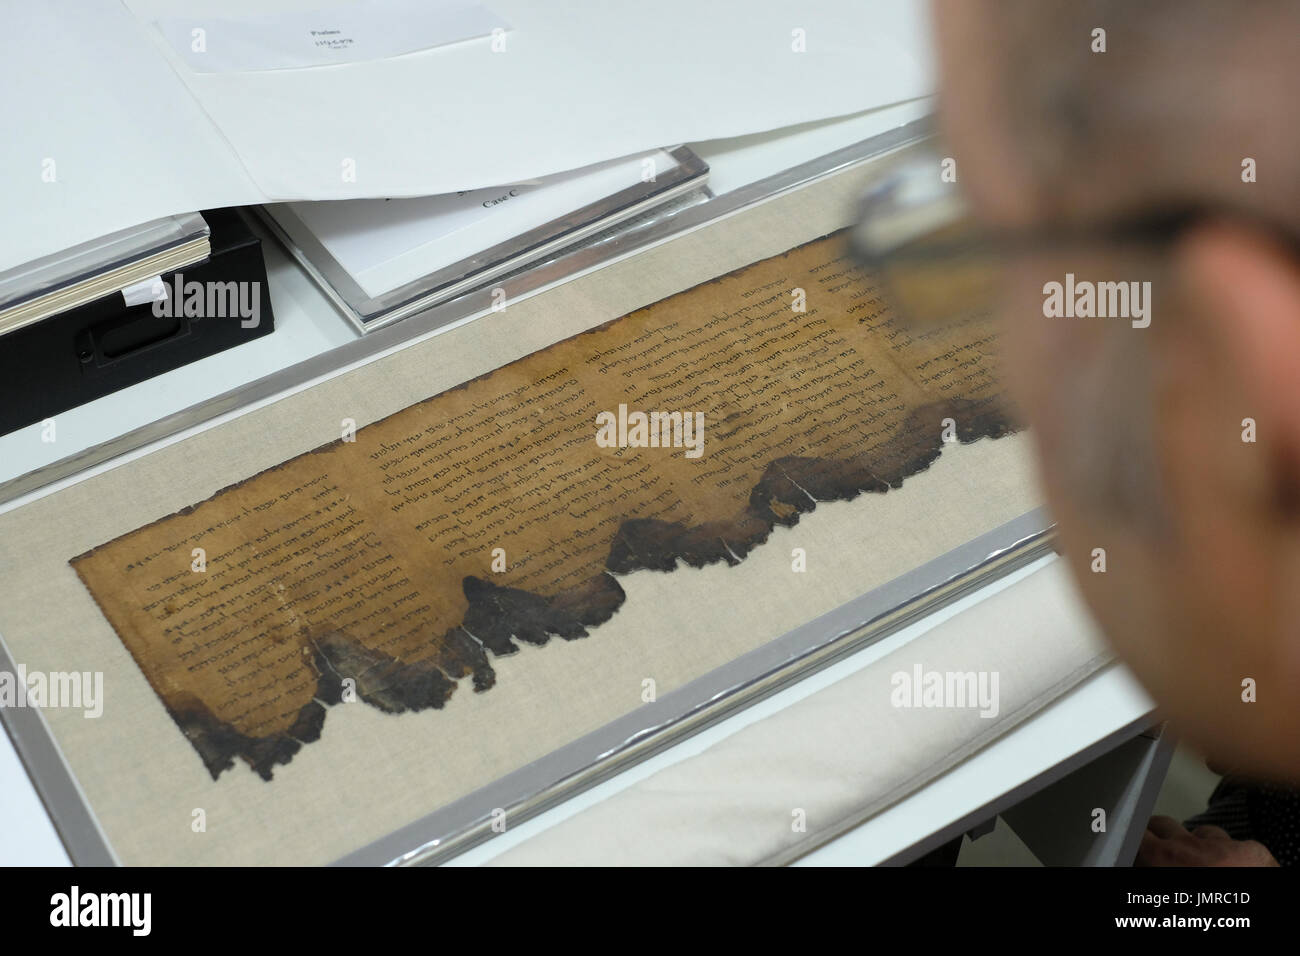 Un homme inspecte un fragment de Mer Morte Psaumes livre écrit en hébreu trouvés à Qumran grottes dans le laboratoire de préservation de l'Autorité des antiquités d'Israël au Musée d'Israël à Jérusalem Israël Banque D'Images